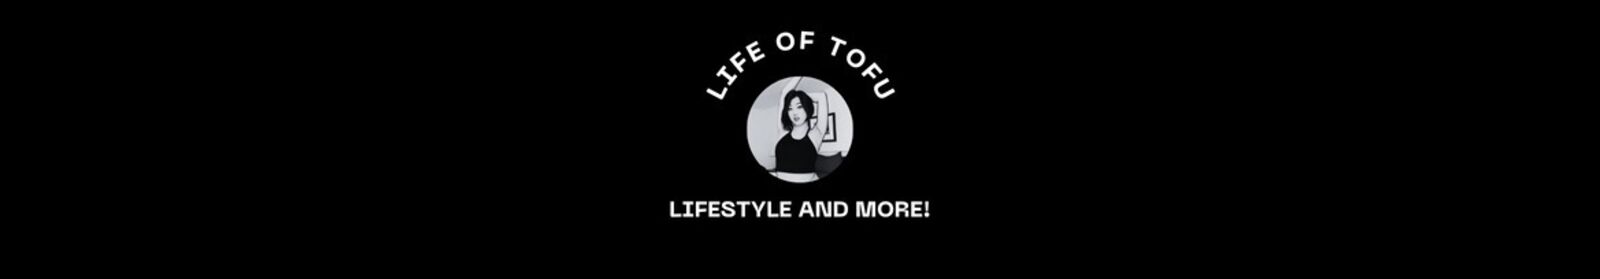 See ☁️ the life of tofu ☁️ profile